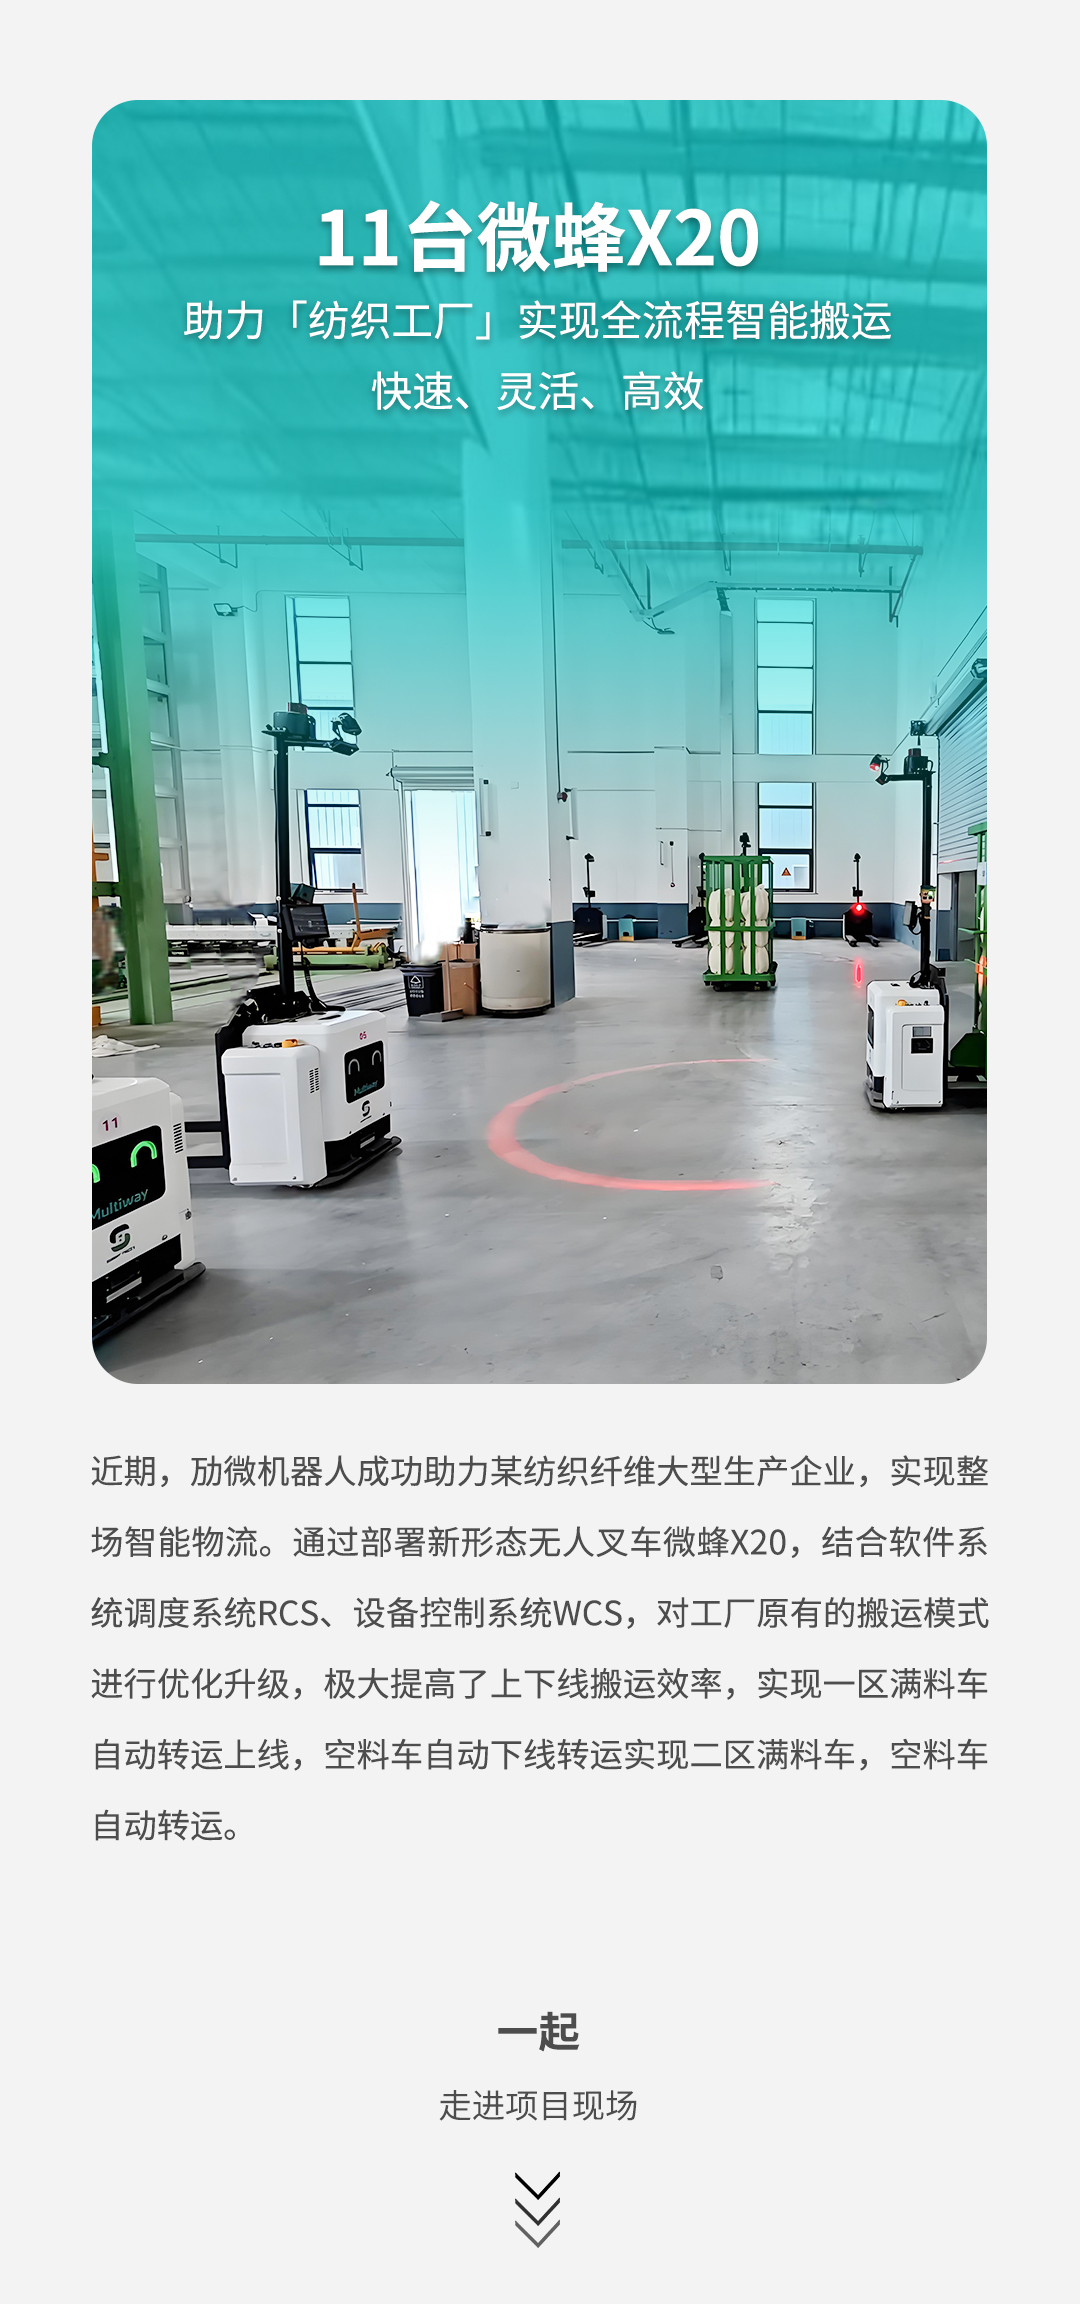 劢微机器人公司微蜂X20助力纺织工厂智能化升级